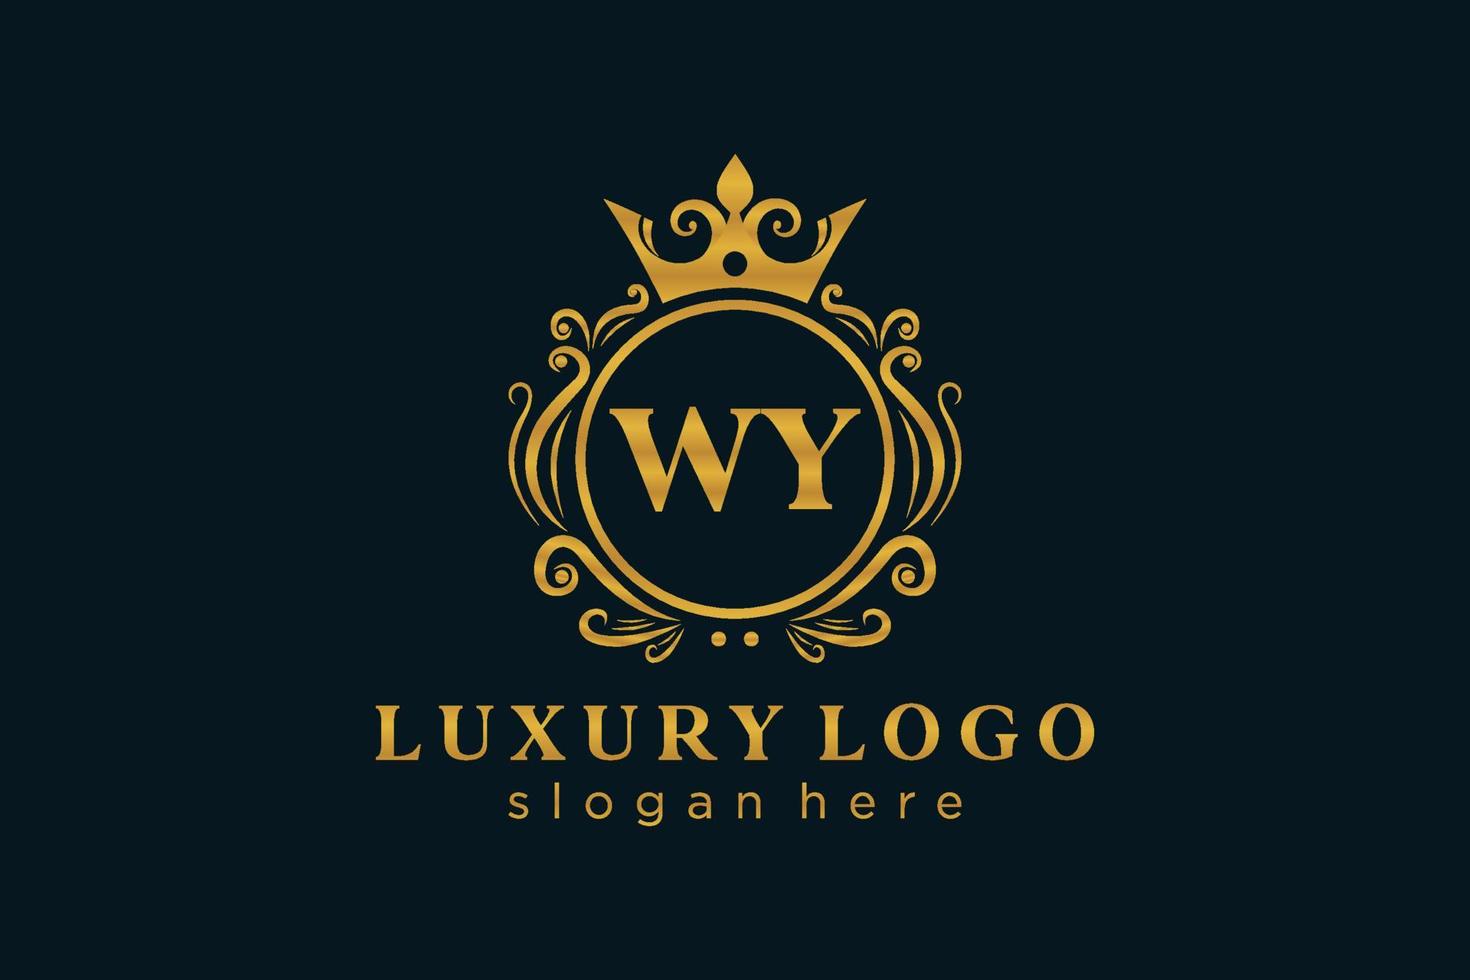 anfängliche wy-Buchstabe königliche Luxus-Logo-Vorlage in Vektorgrafiken für Restaurant, Lizenzgebühren, Boutique, Café, Hotel, heraldisch, Schmuck, Mode und andere Vektorillustrationen. vektor